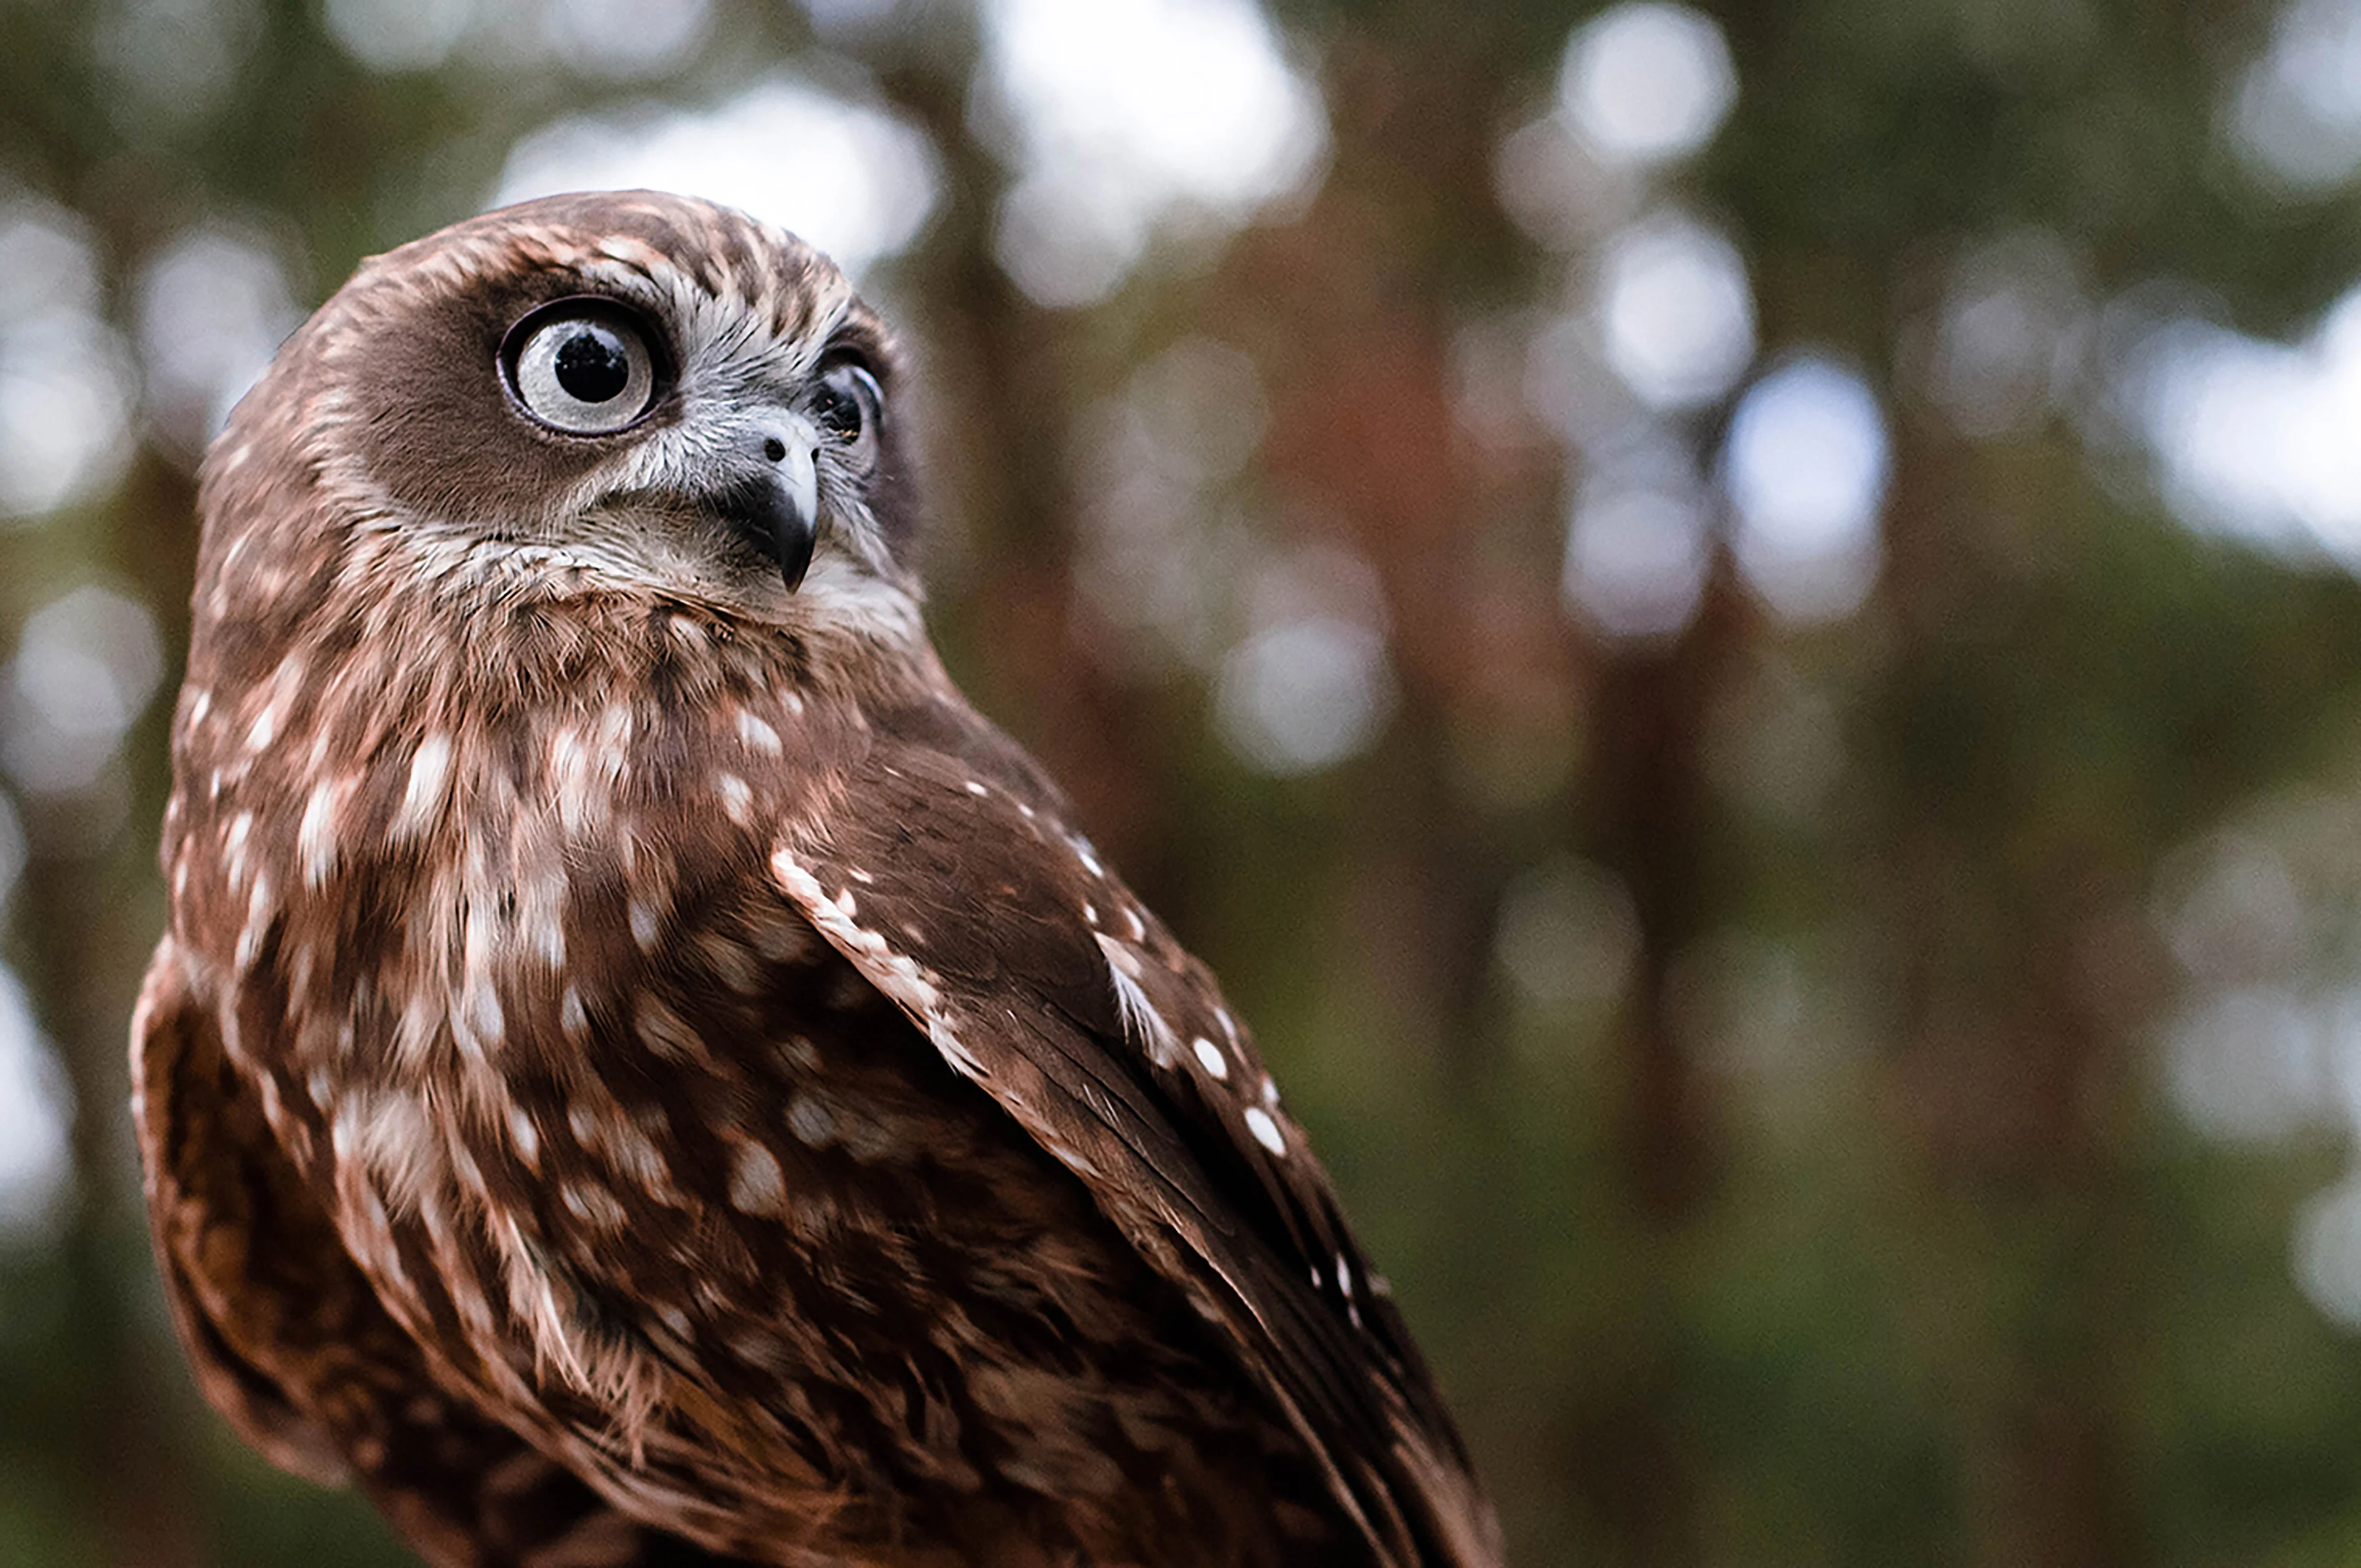 Close up of owl